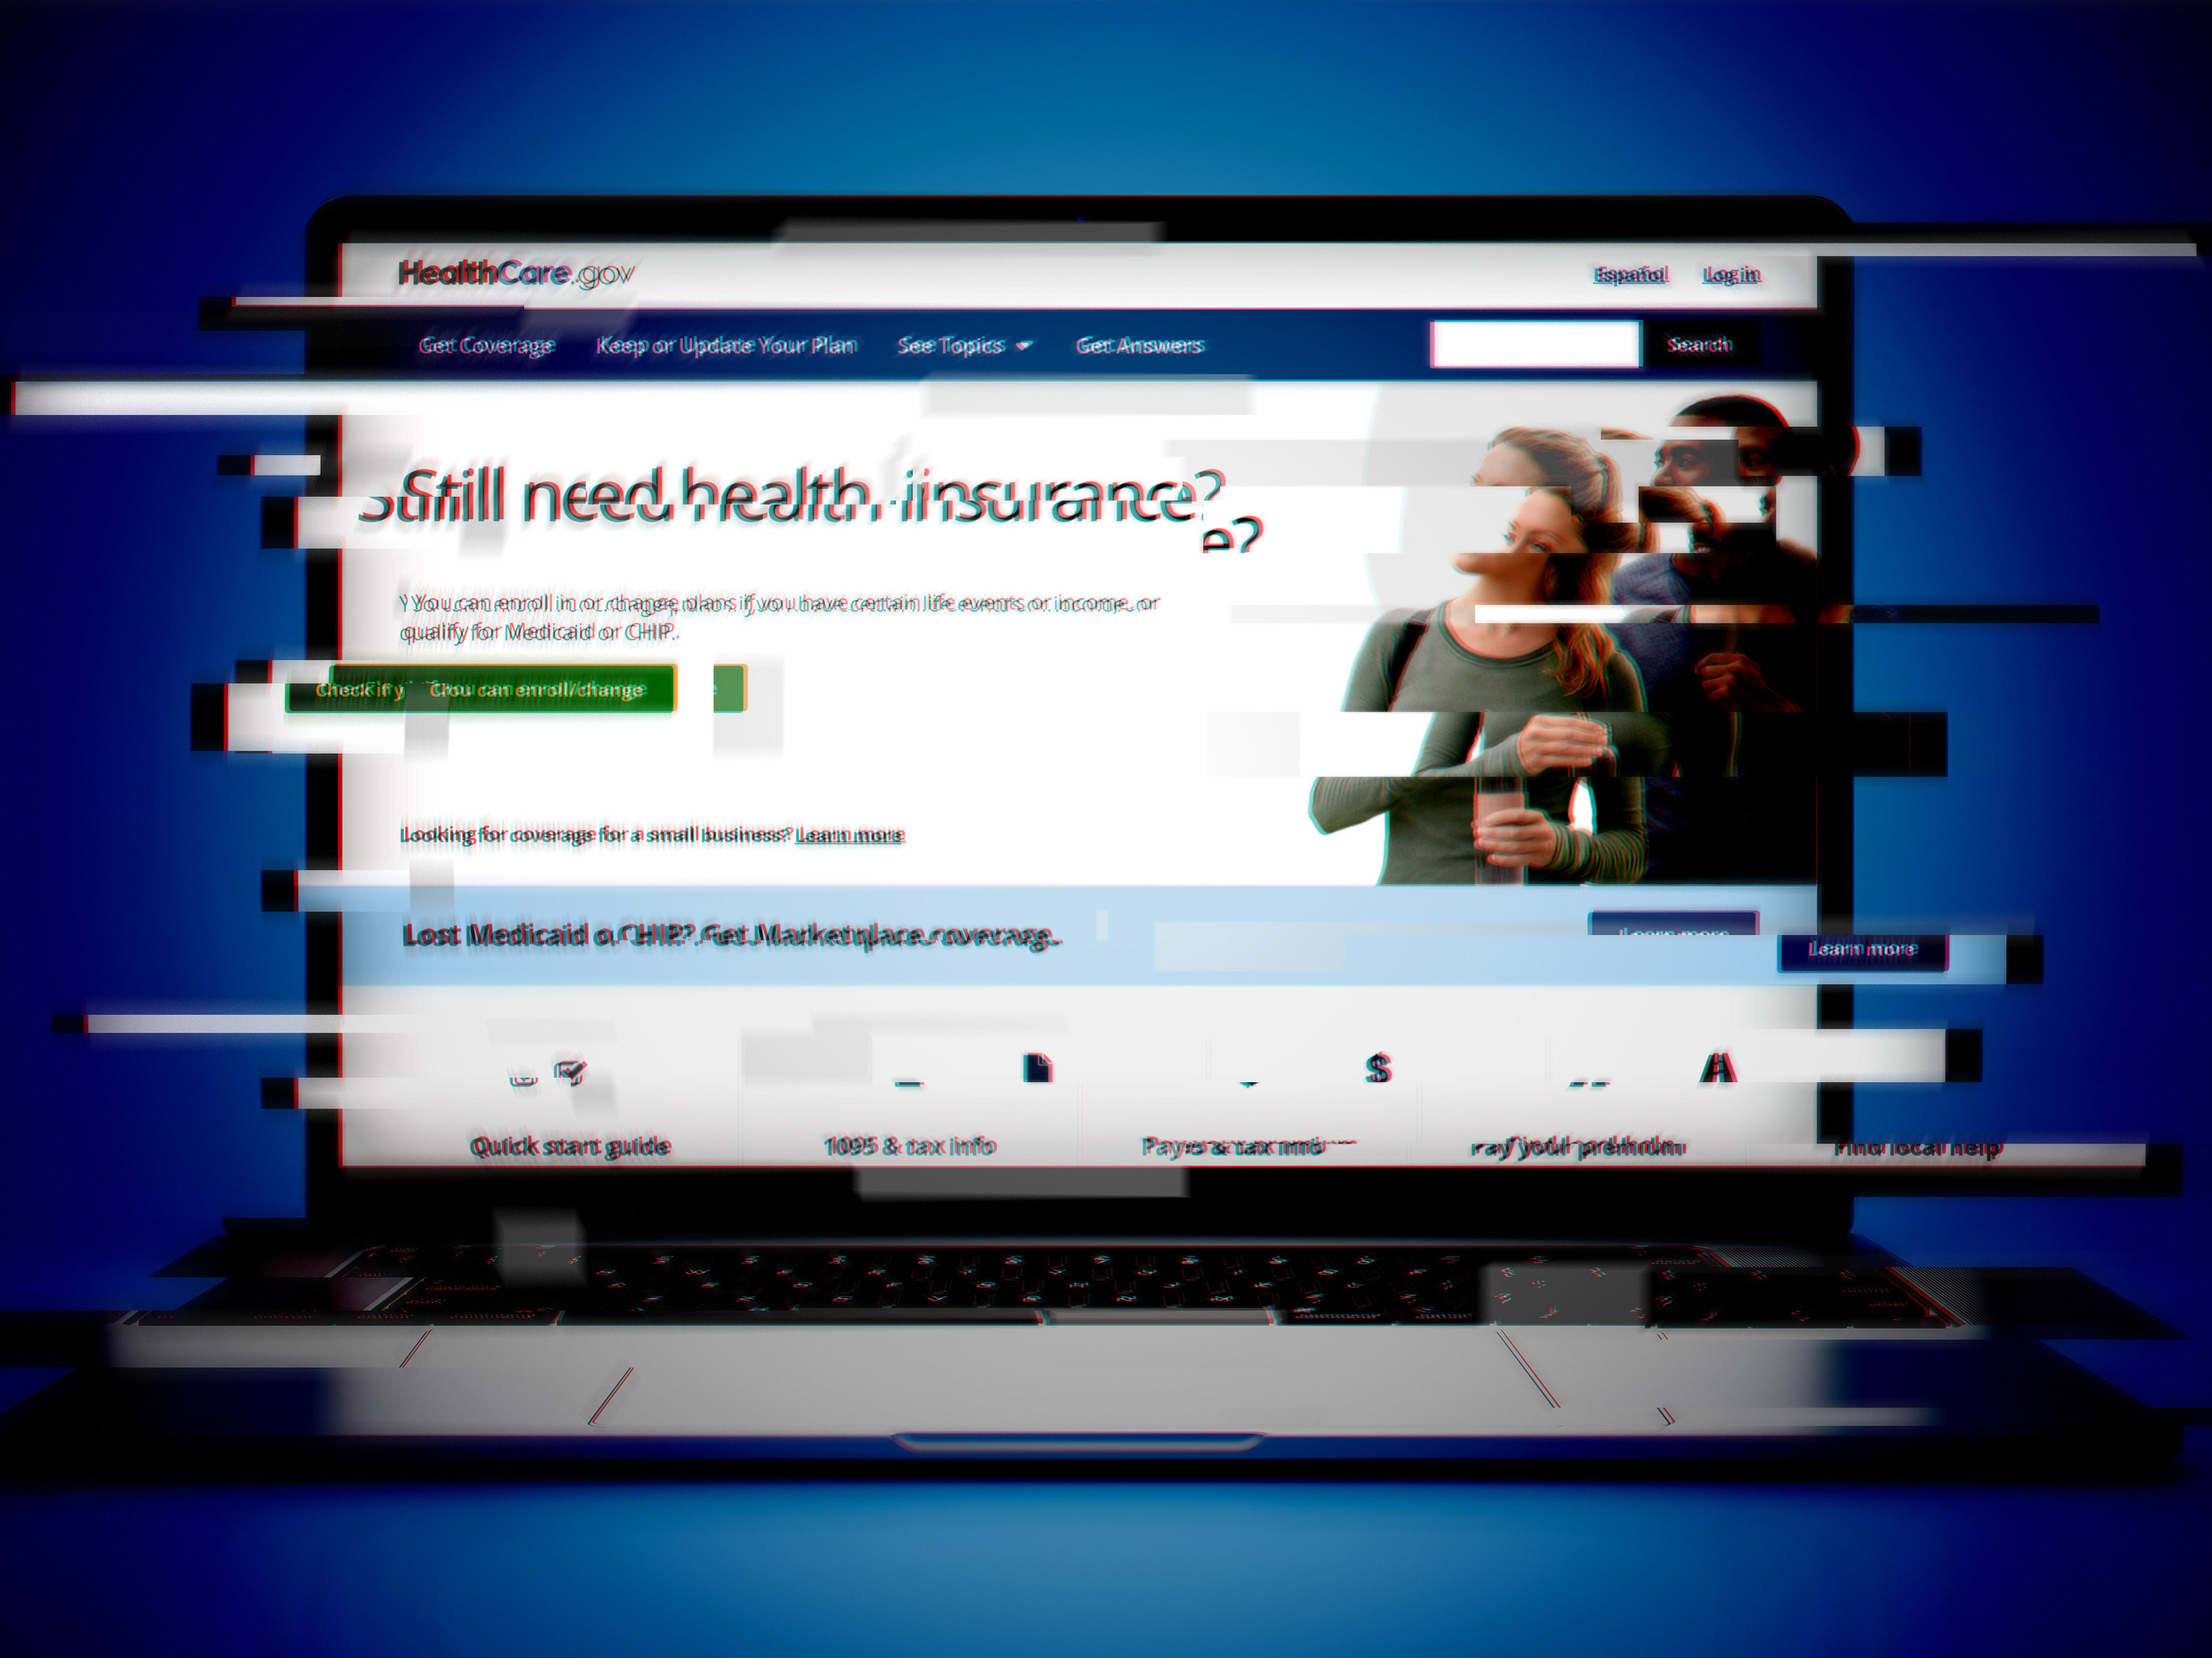 Problèmes d’inscription à l’assurance maladie Obamacare ou ACA.